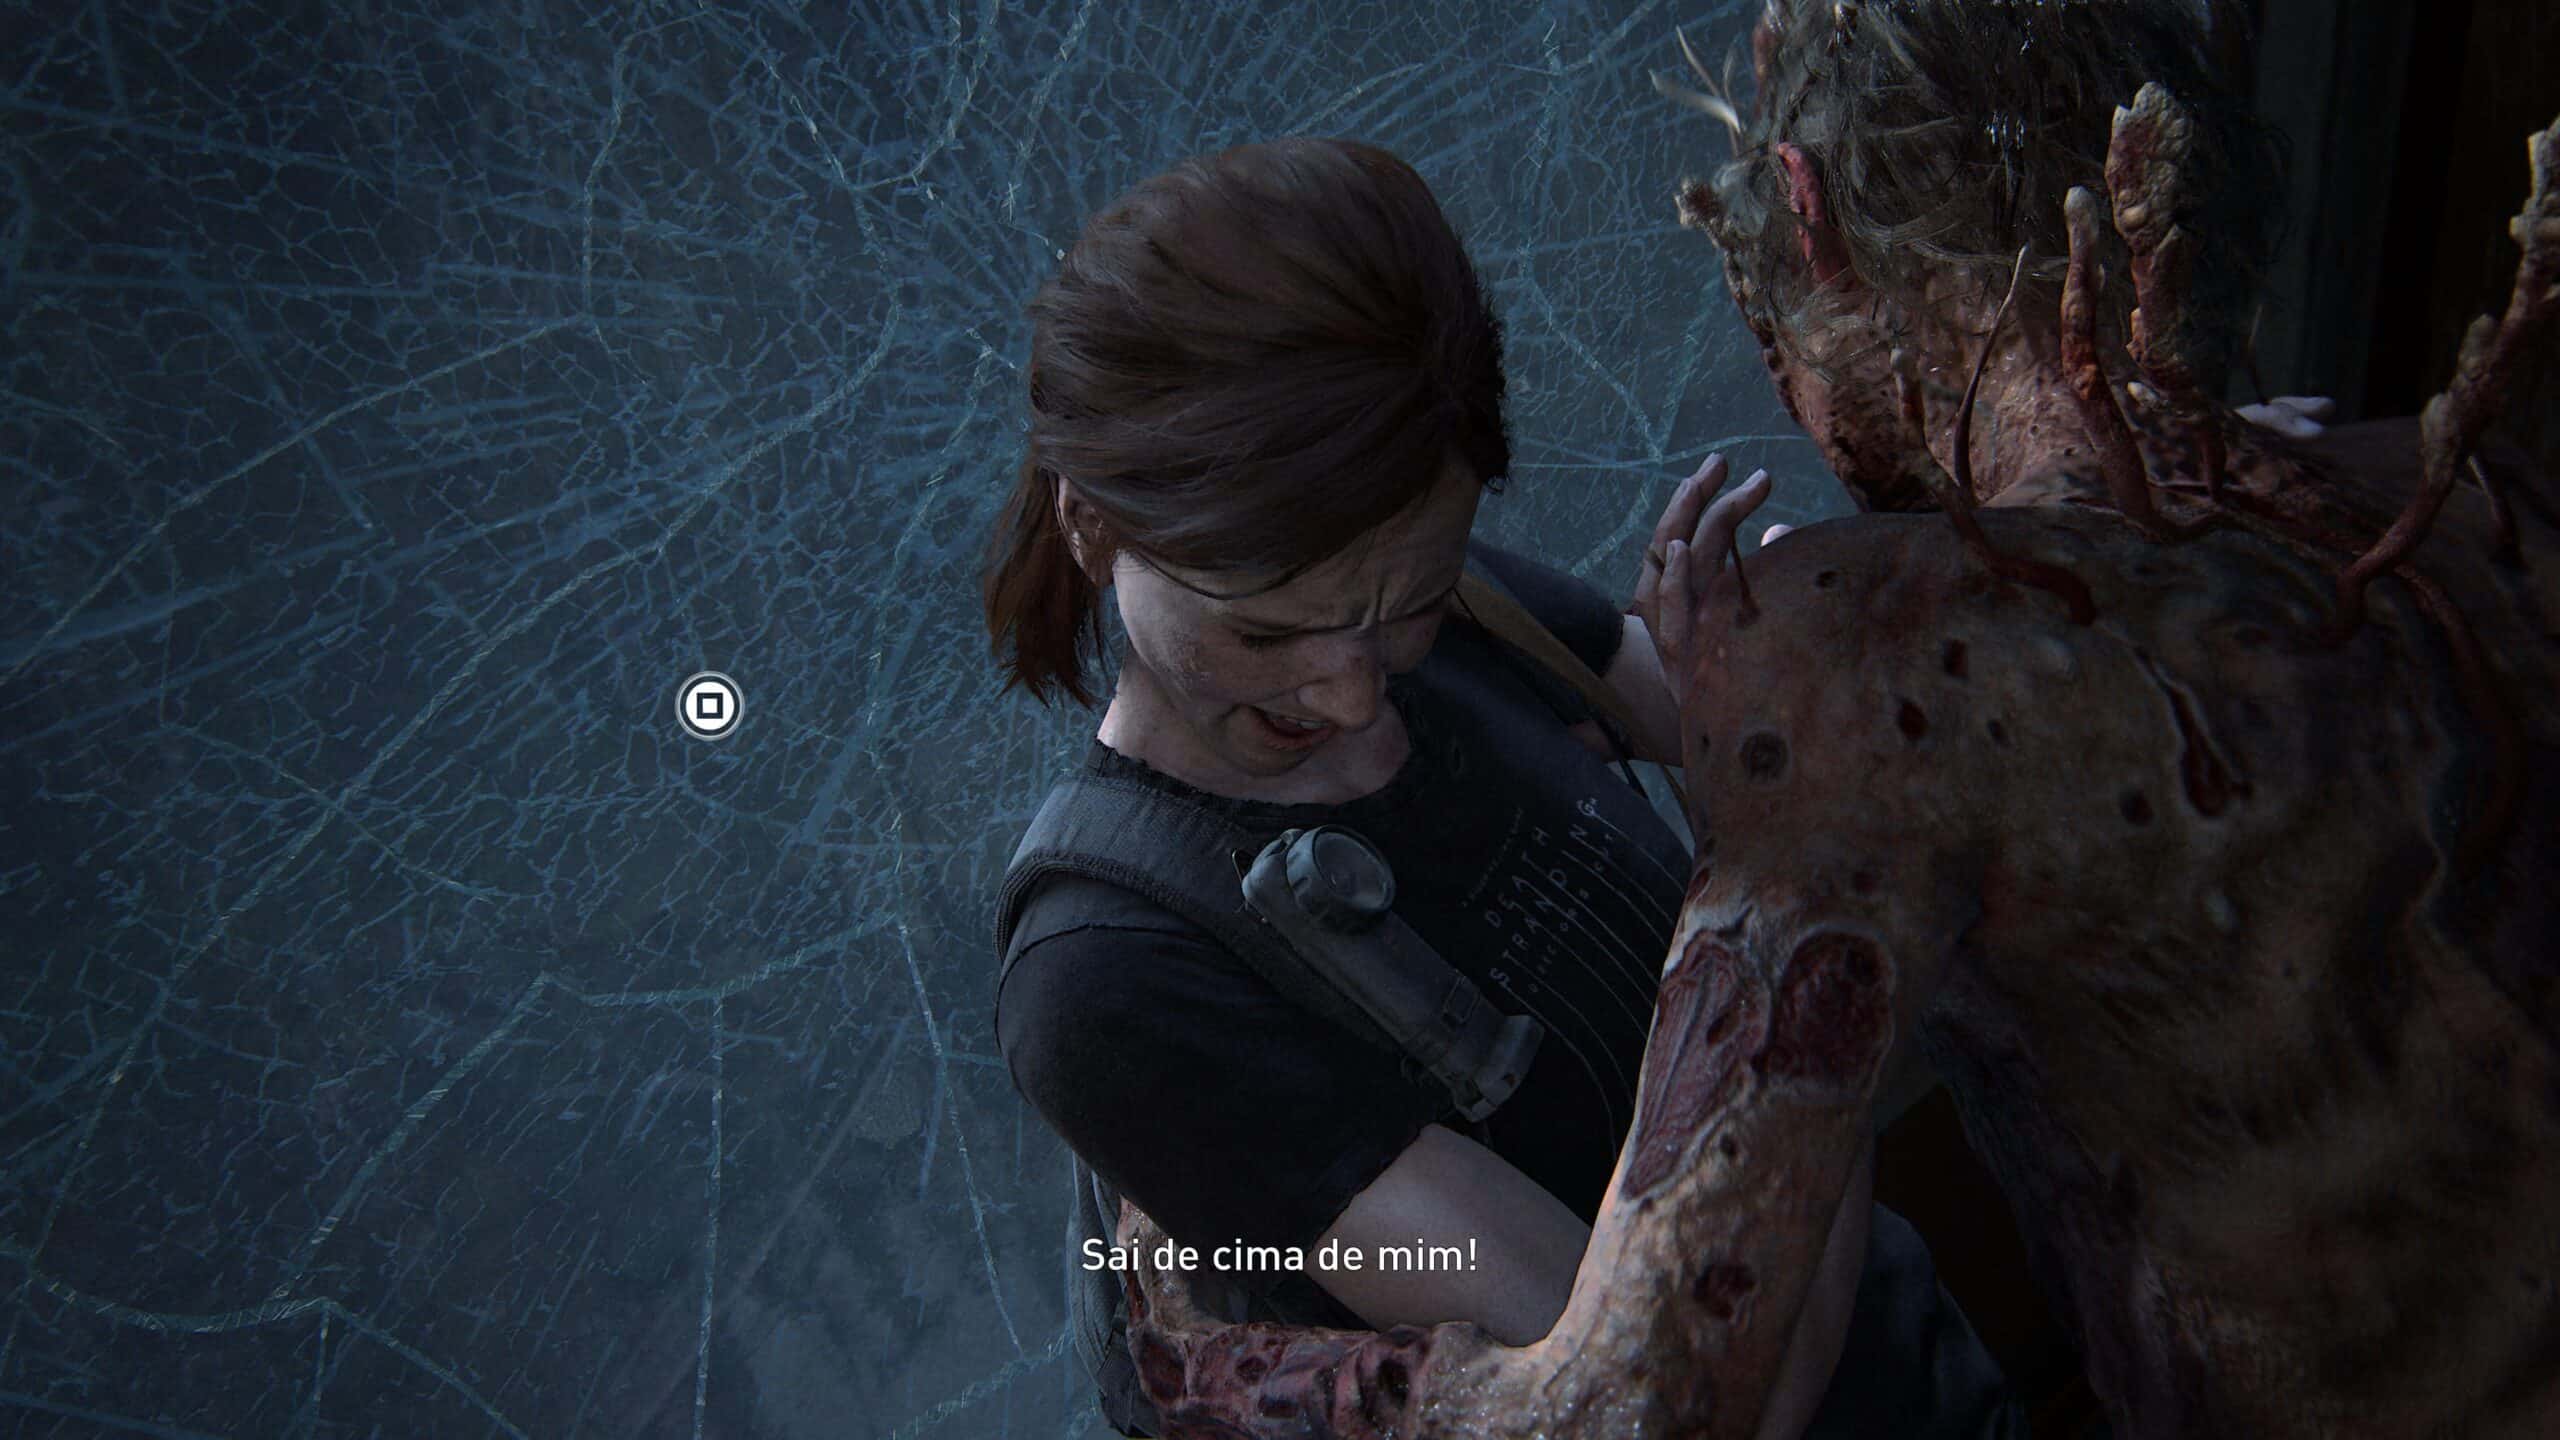 Ellie enfrenta um Espreitador em The Last of Us Parte II Remasterizado.